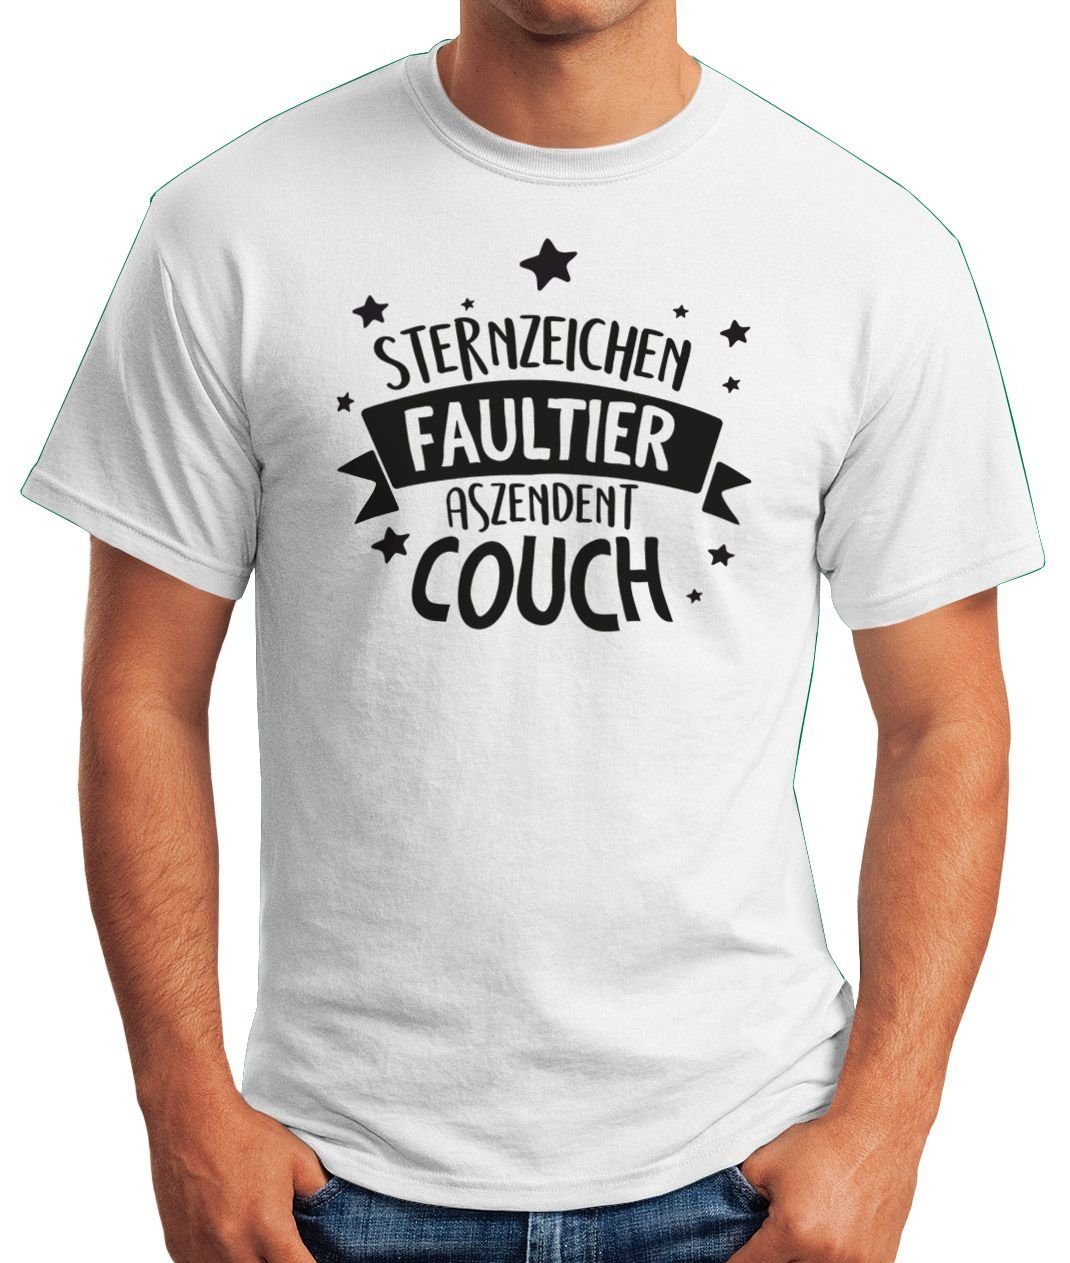 Fun-Shirt Herren mit Aszendent T-Shirt Faultier. Print-Shirt Print Moonworks® Spruch Sternzeichen Couch. lustig mit MoonWorks Motiv